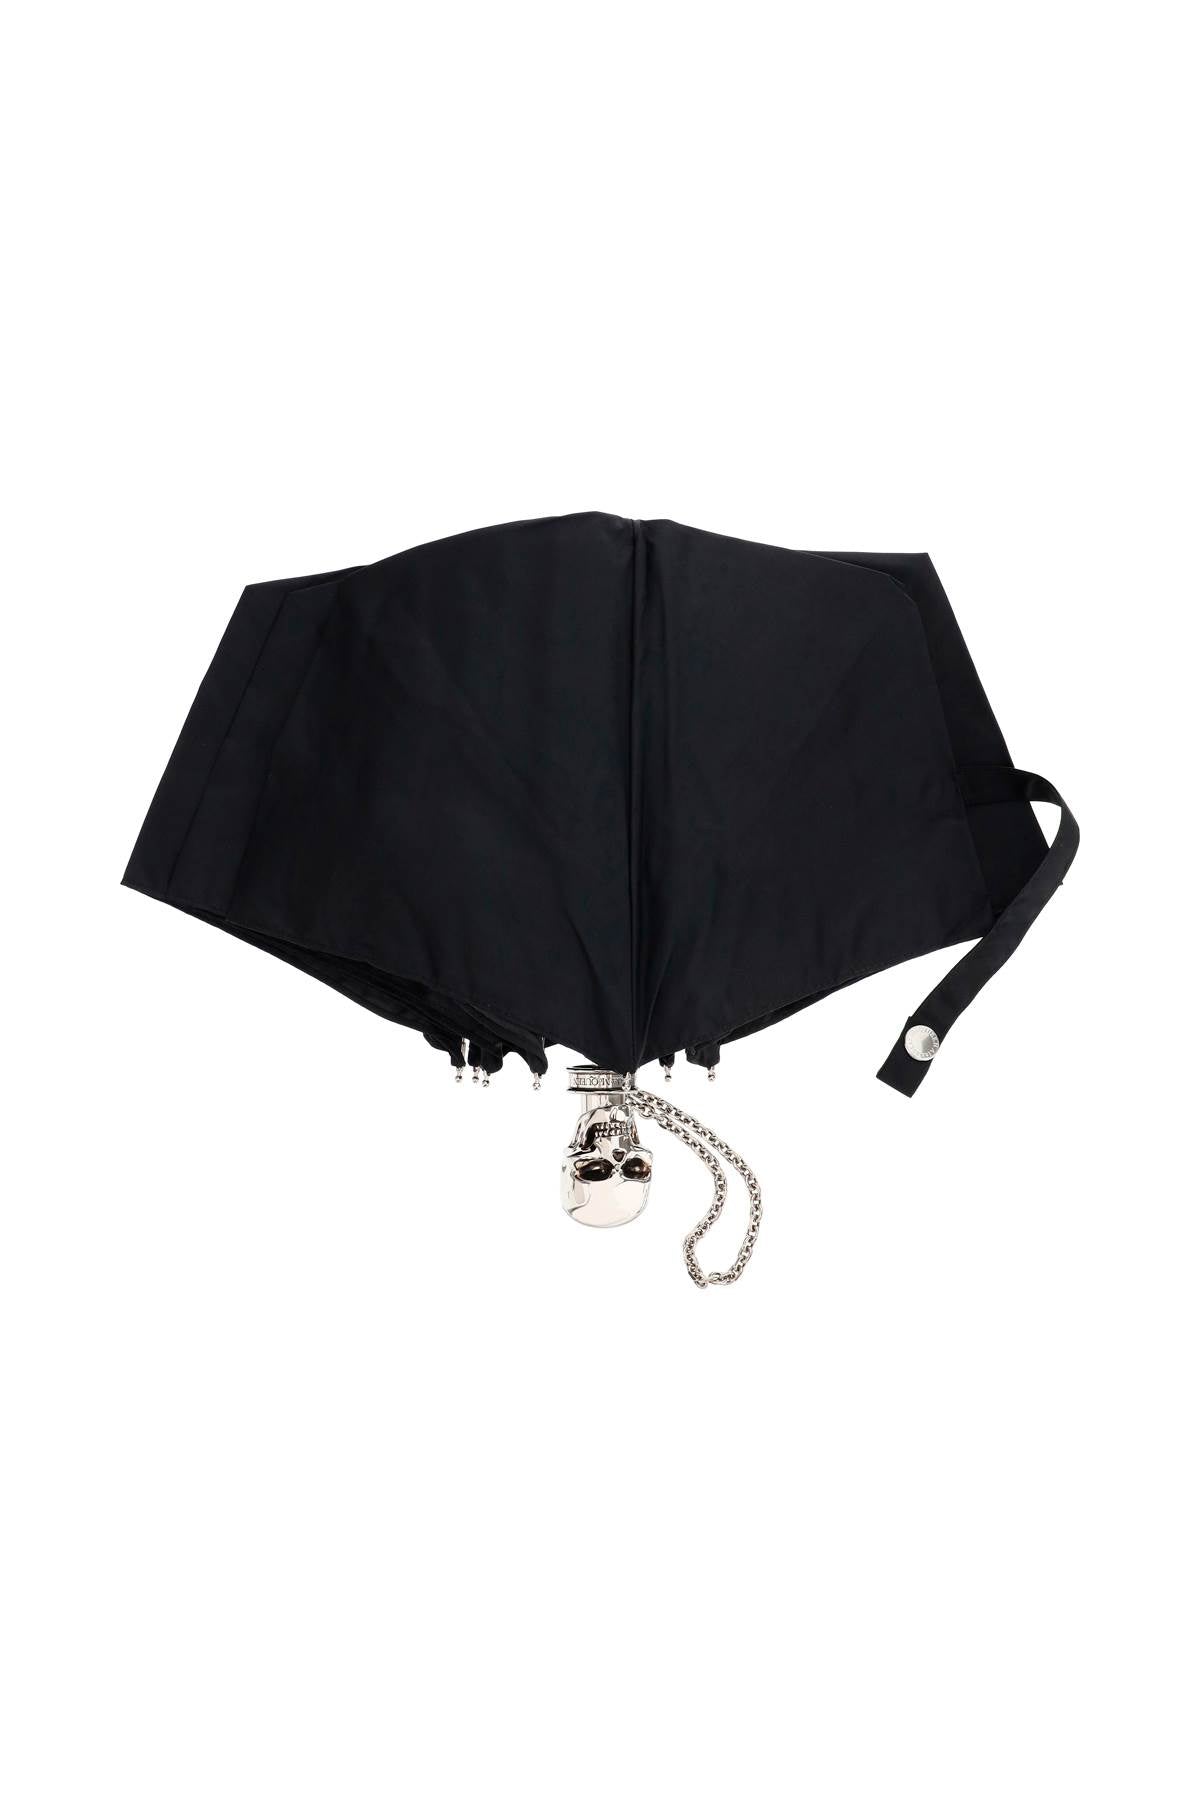 アイコニックな黒の折りたたみ傘 - FW23コレクション